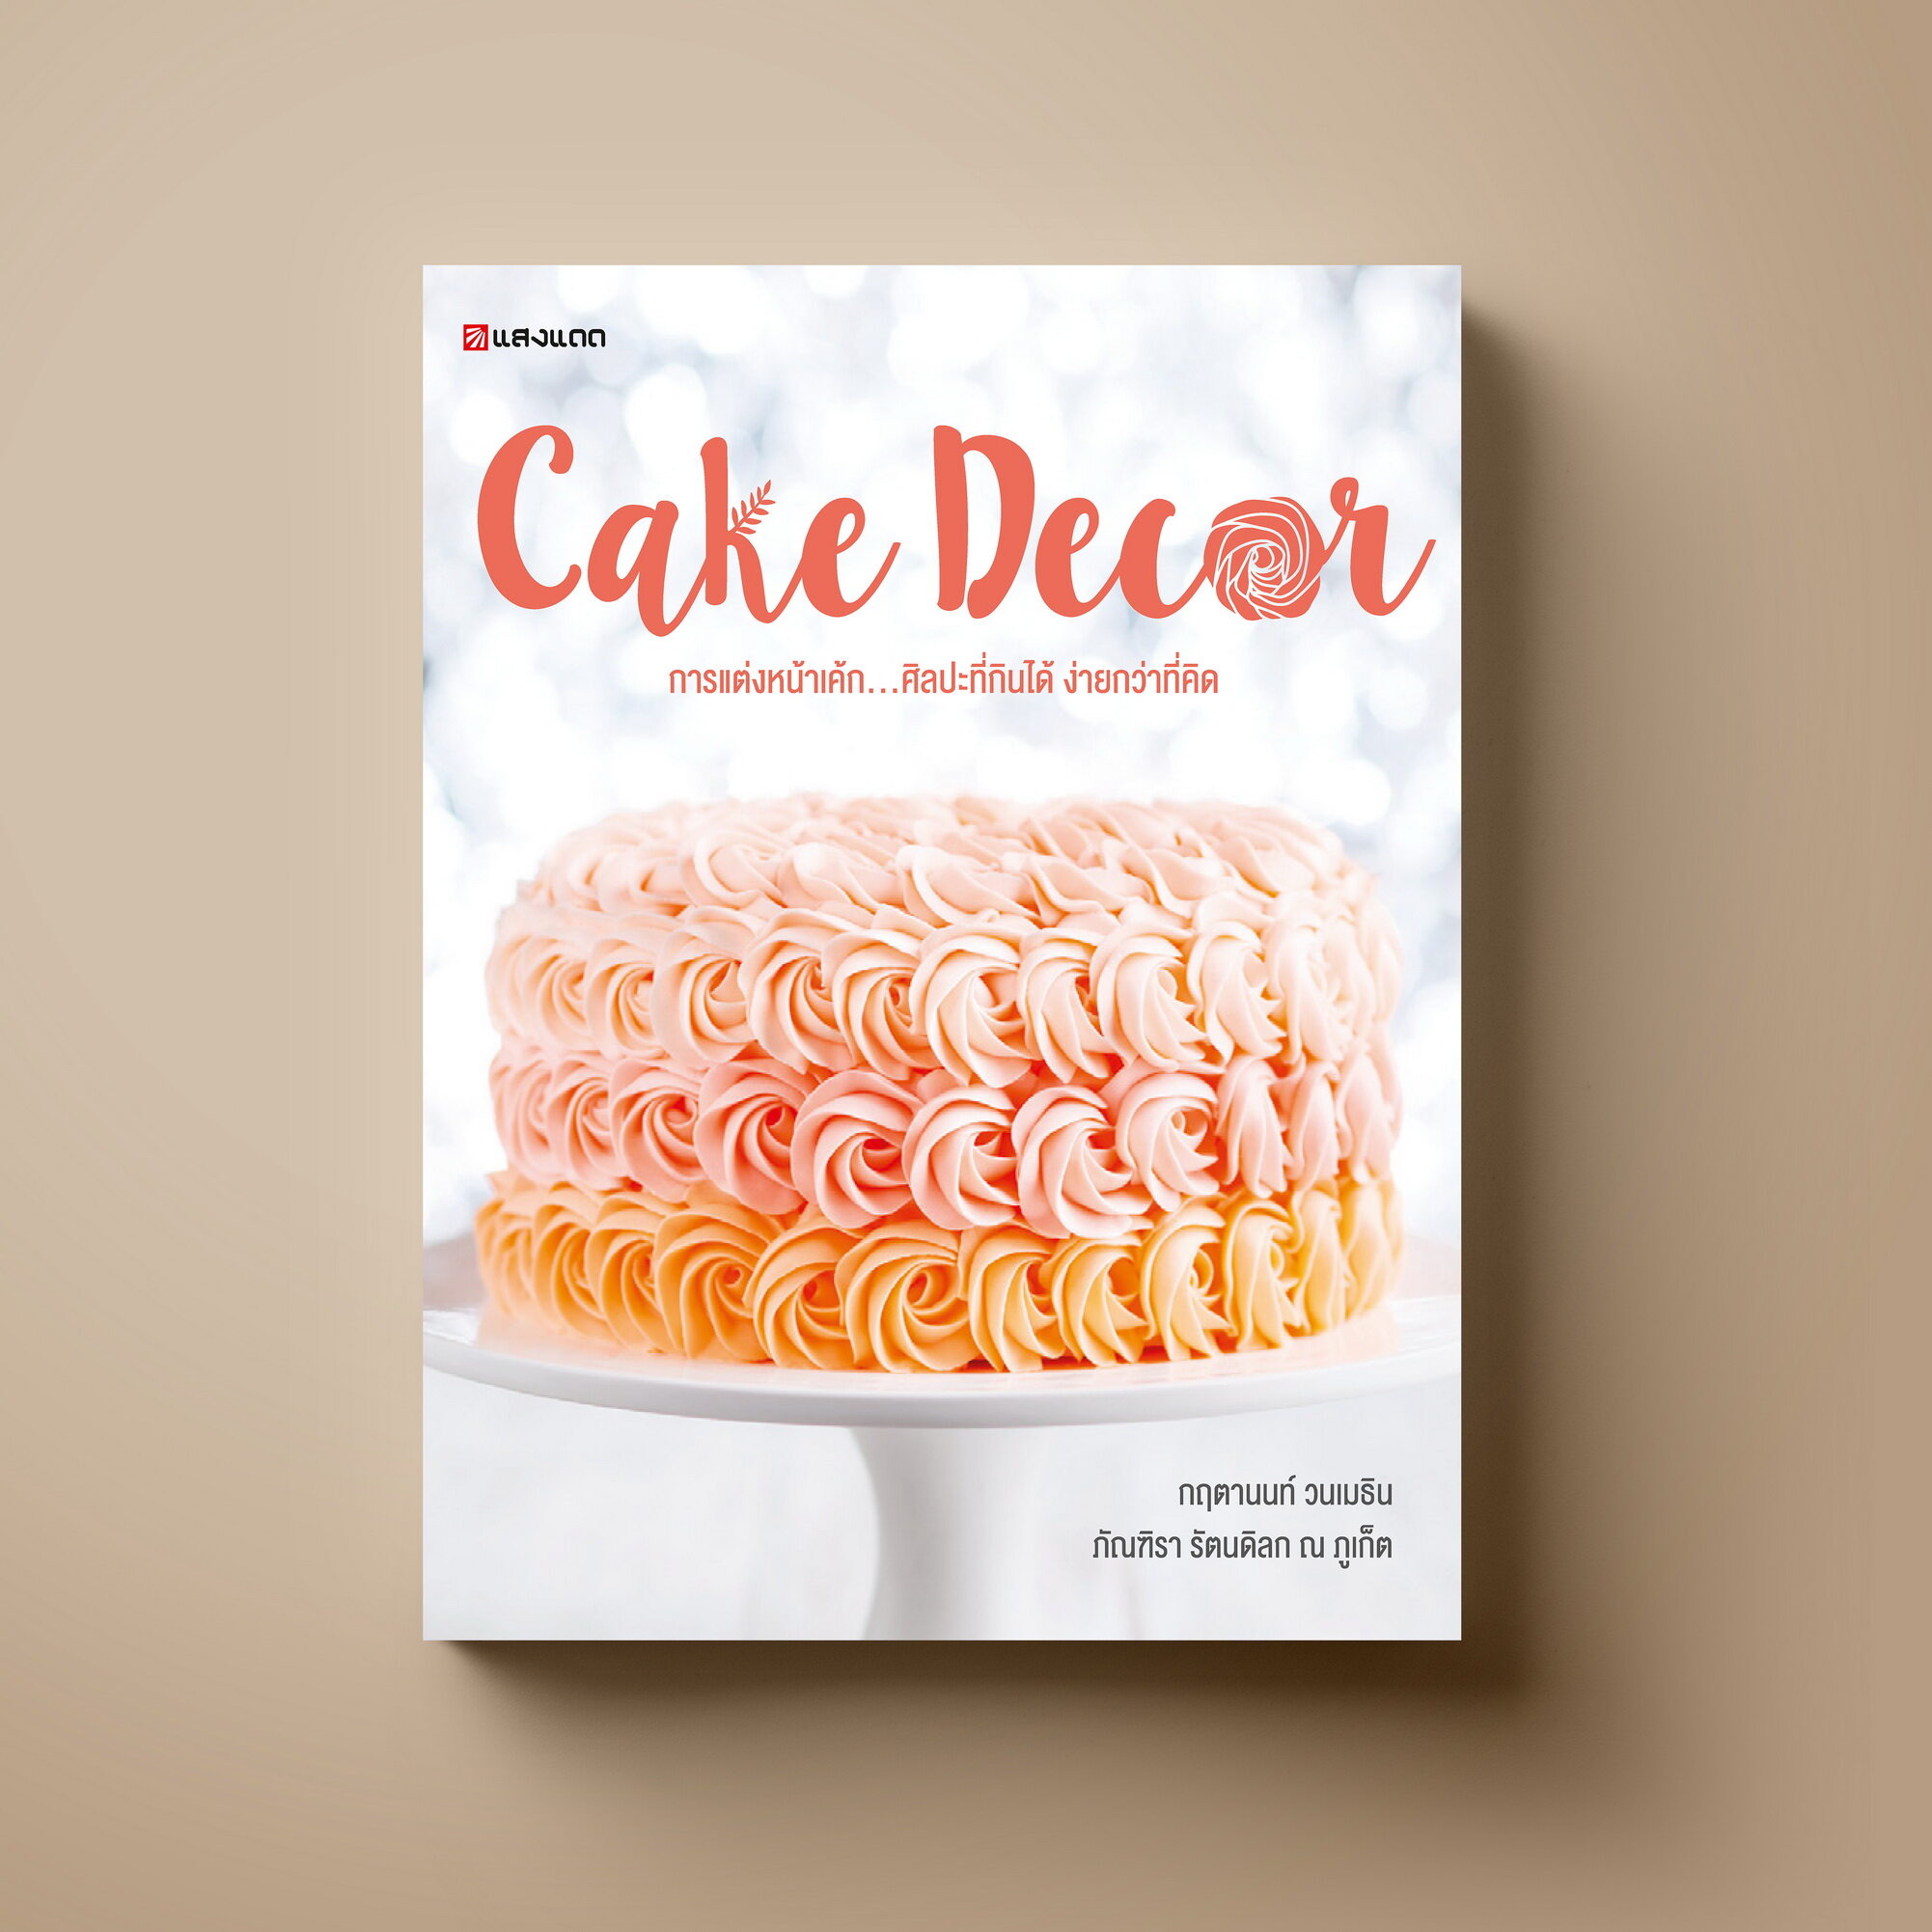 Cake Decor หนังสือตำราอาหาร ขนม Sangdad Book สำนักพิมพ์แสงแดด